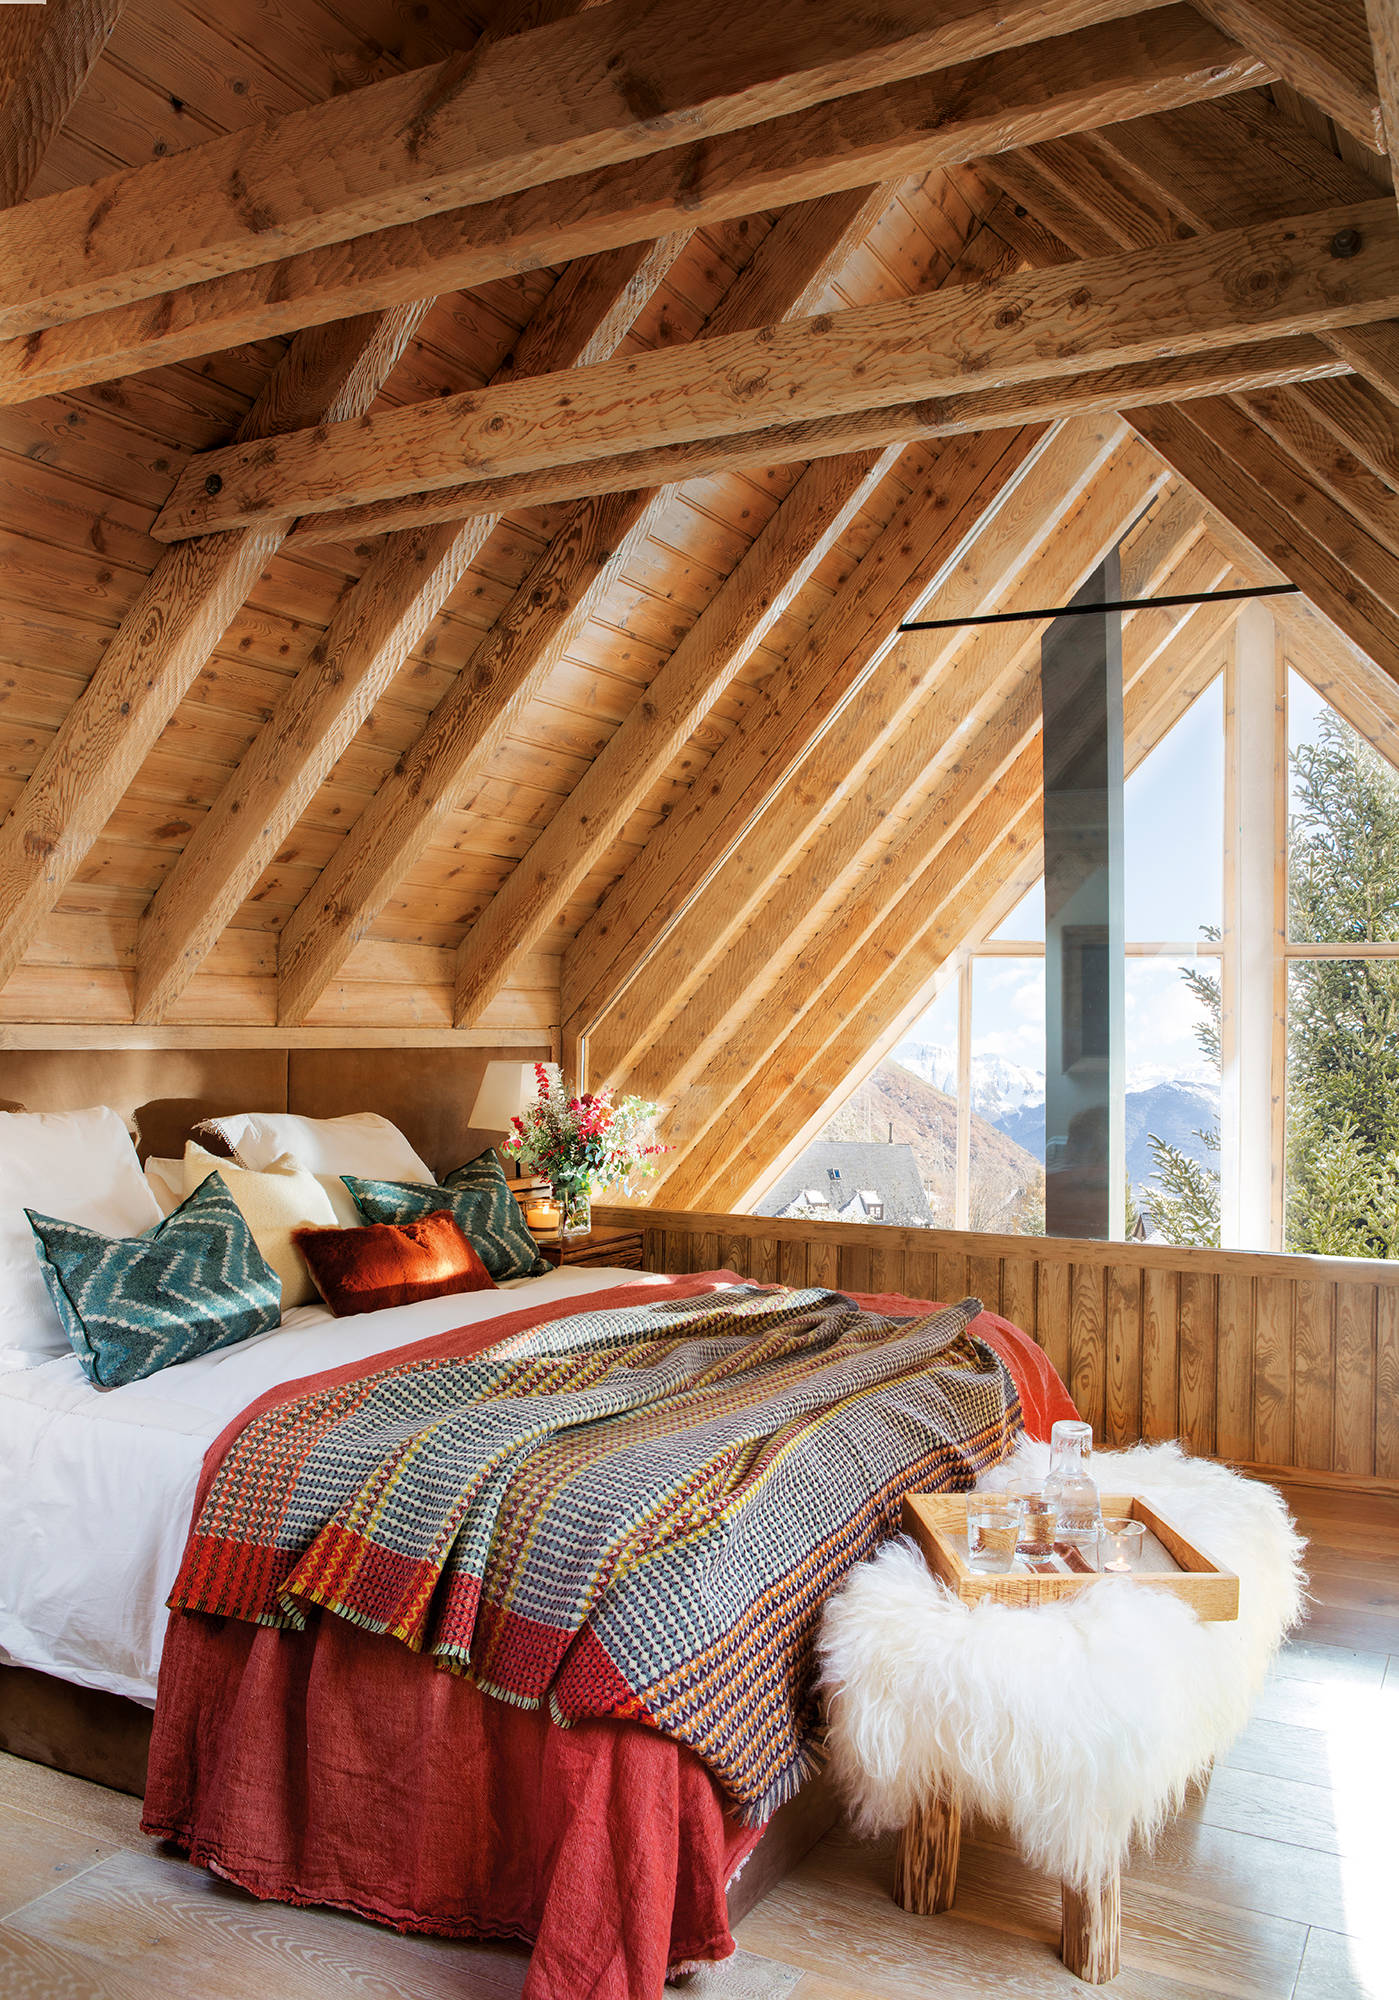 Dormitorio abuhardillado con cama vestida de invierno.